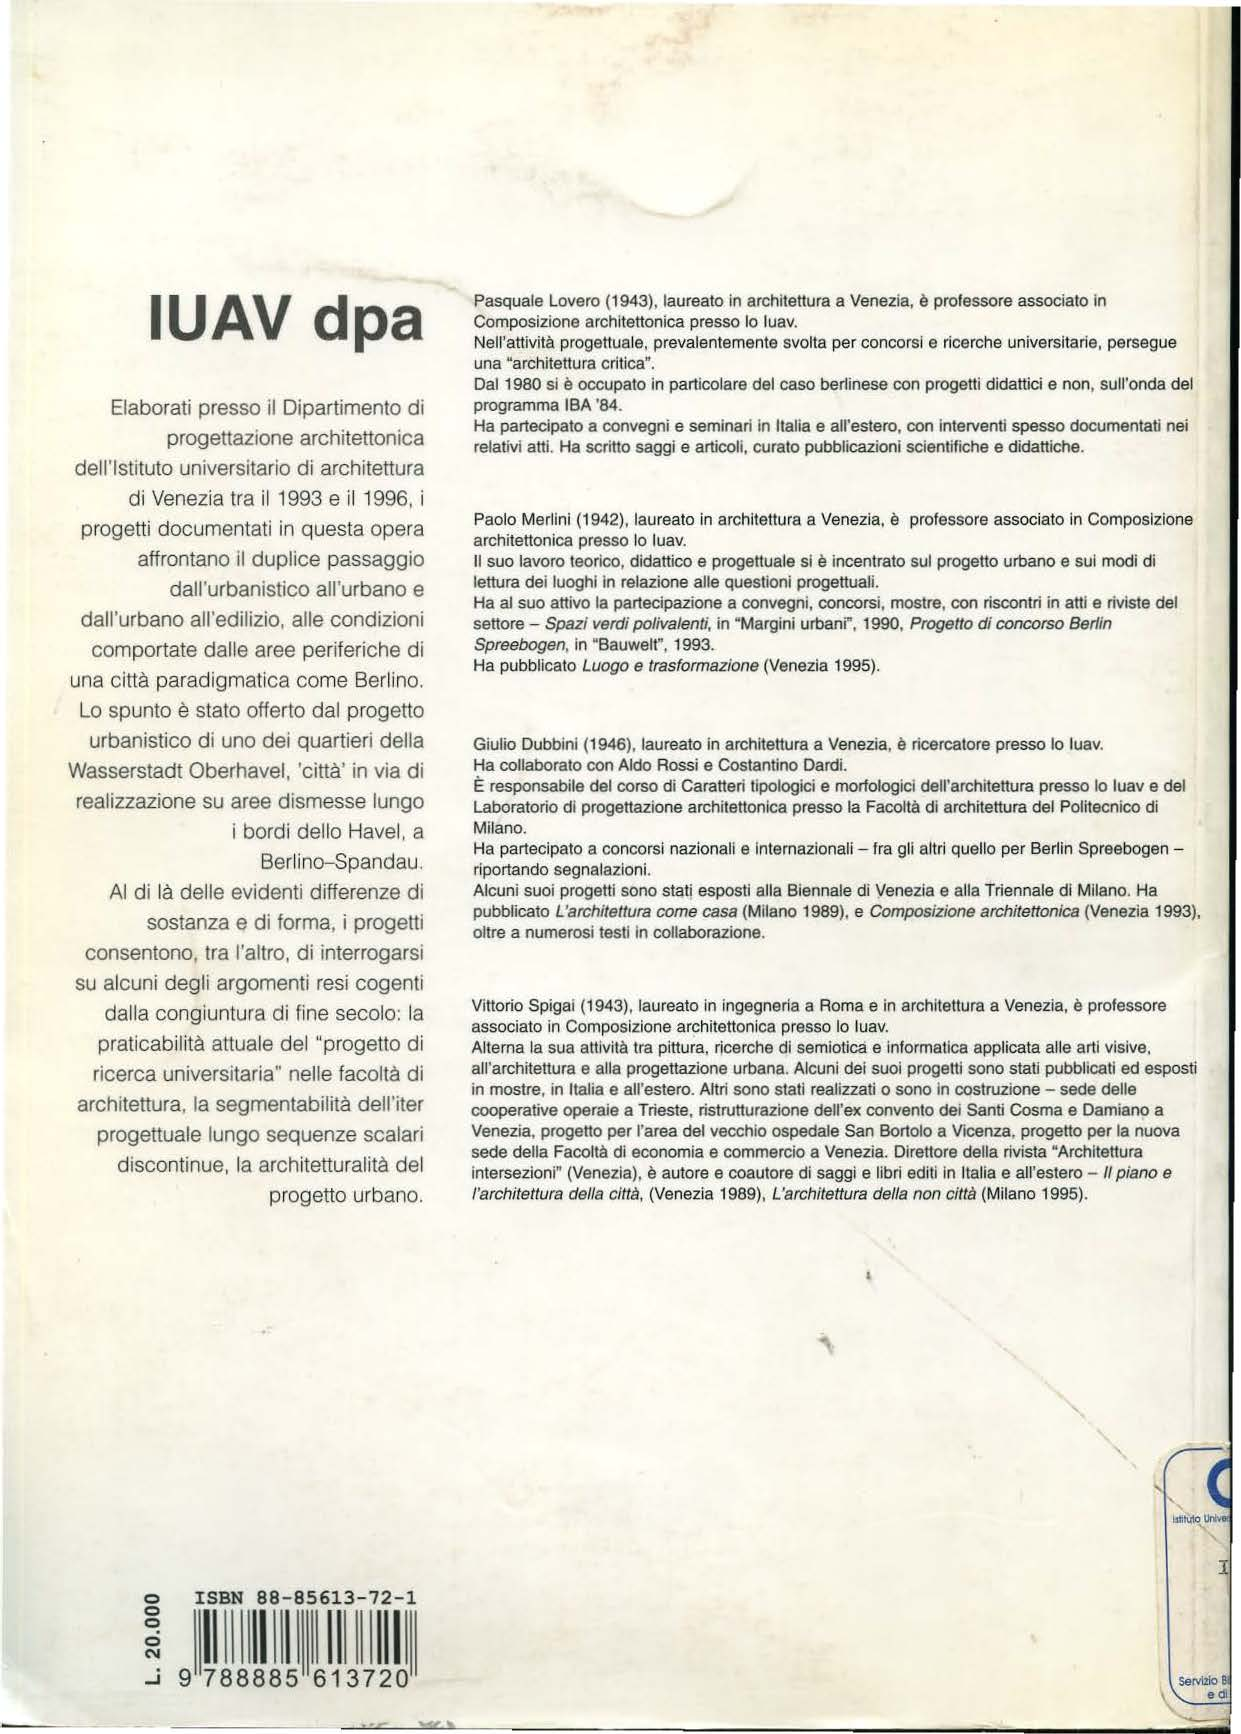 IUAV dpa Elaborati presso il Dipartimento di progettazione architettonica dell'istituto universitario di architettura di Venezia tra il 1993 e il 1996, i progetti documentati ìn questa opera